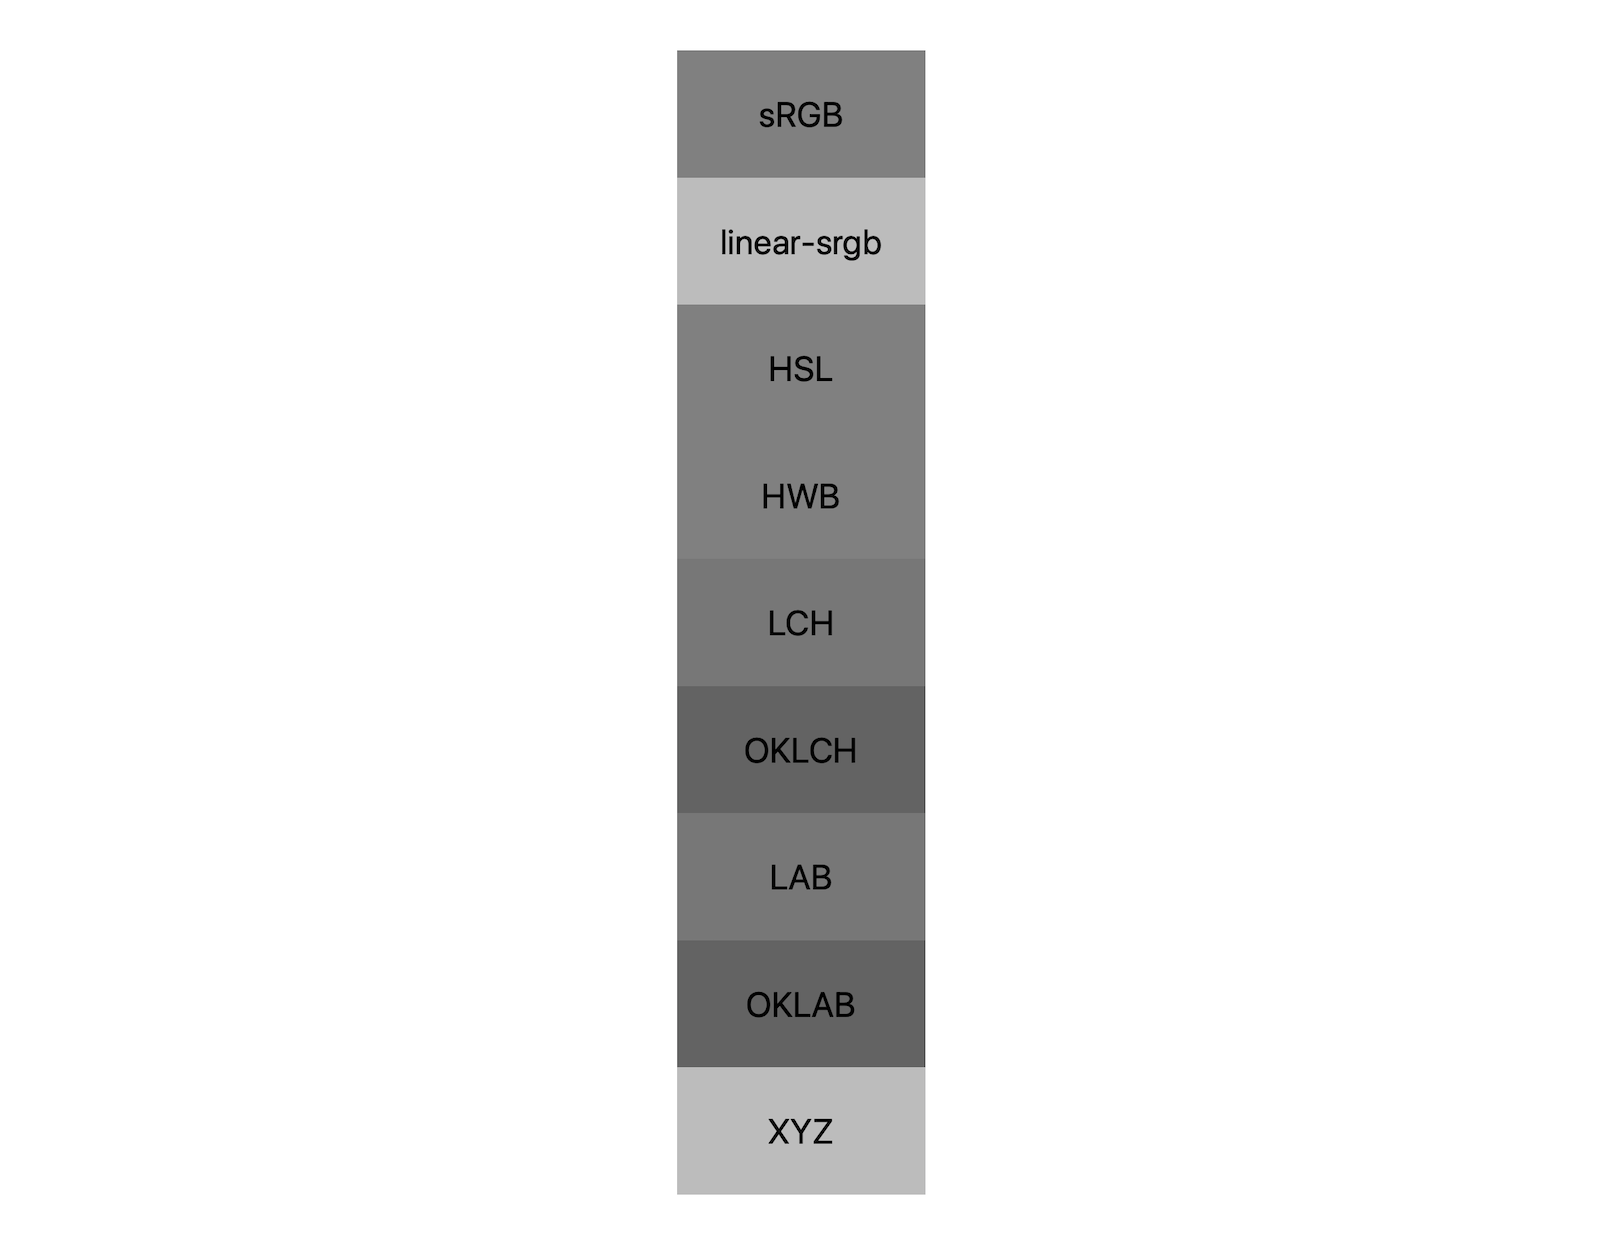 7가지 색상 공간 (srgb, linear-srgb, lch, oklch, lab, oklab, xyz) 각각에 흑백이 혼합된 결과가 표시됩니다. 약 5가지의 음영이 표시되어 각 색공간이 회색과도 다르게 혼합됨을 보여줍니다.